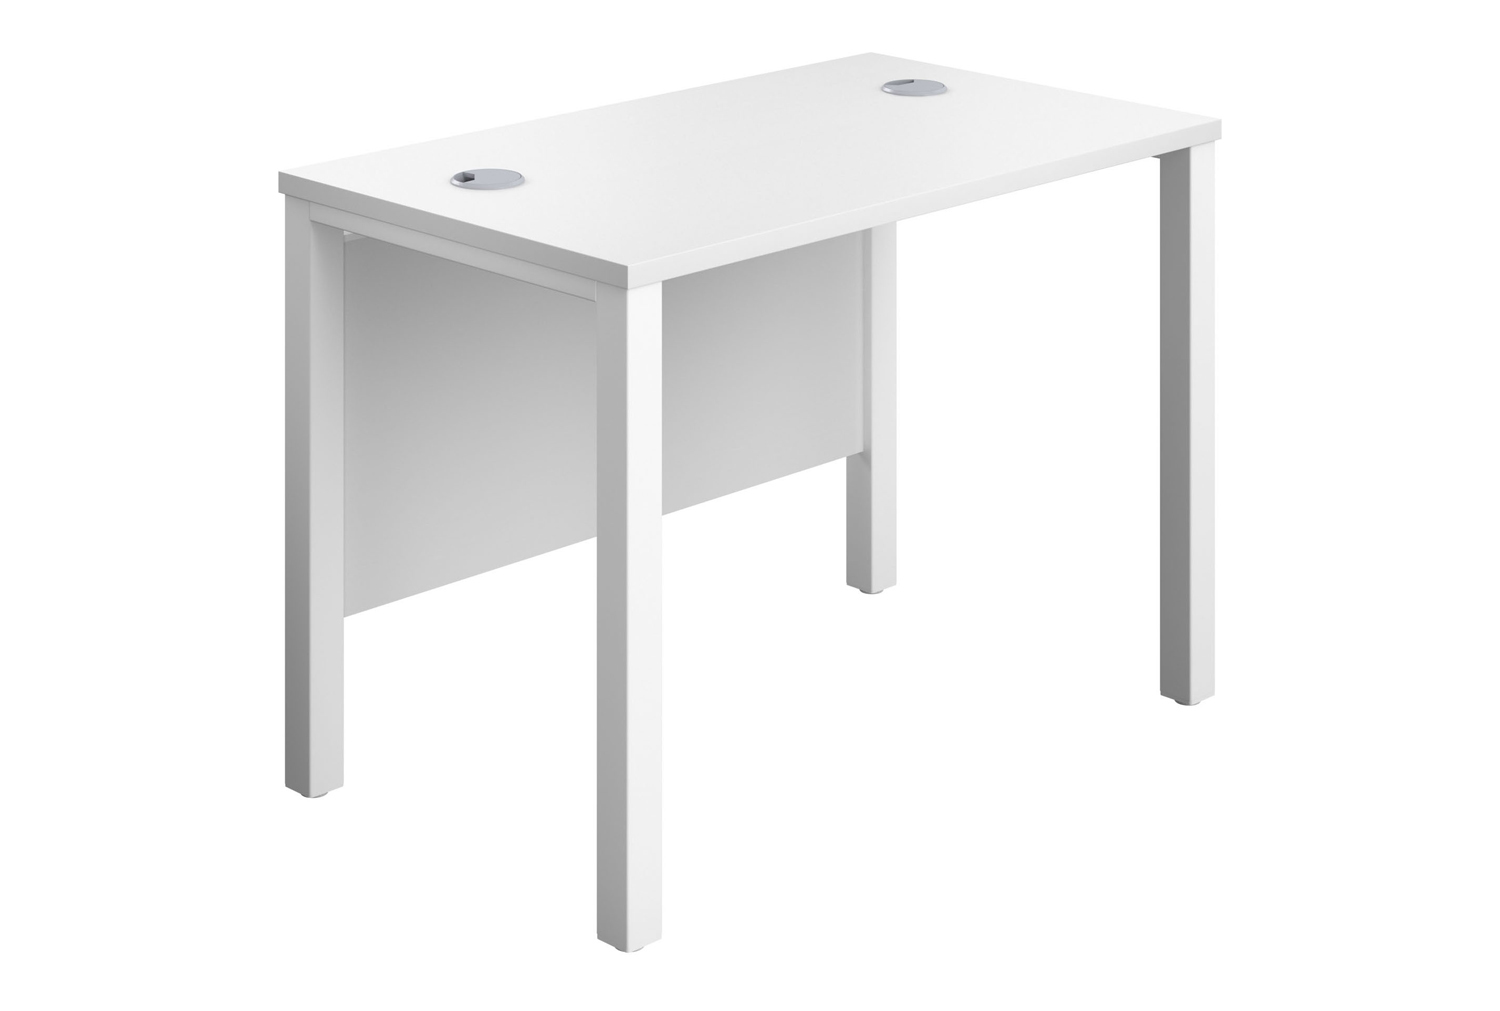 Progress H-Leg Narrow Rectangular Office Desk, 100wx60dx73h (cm), White Frame, White